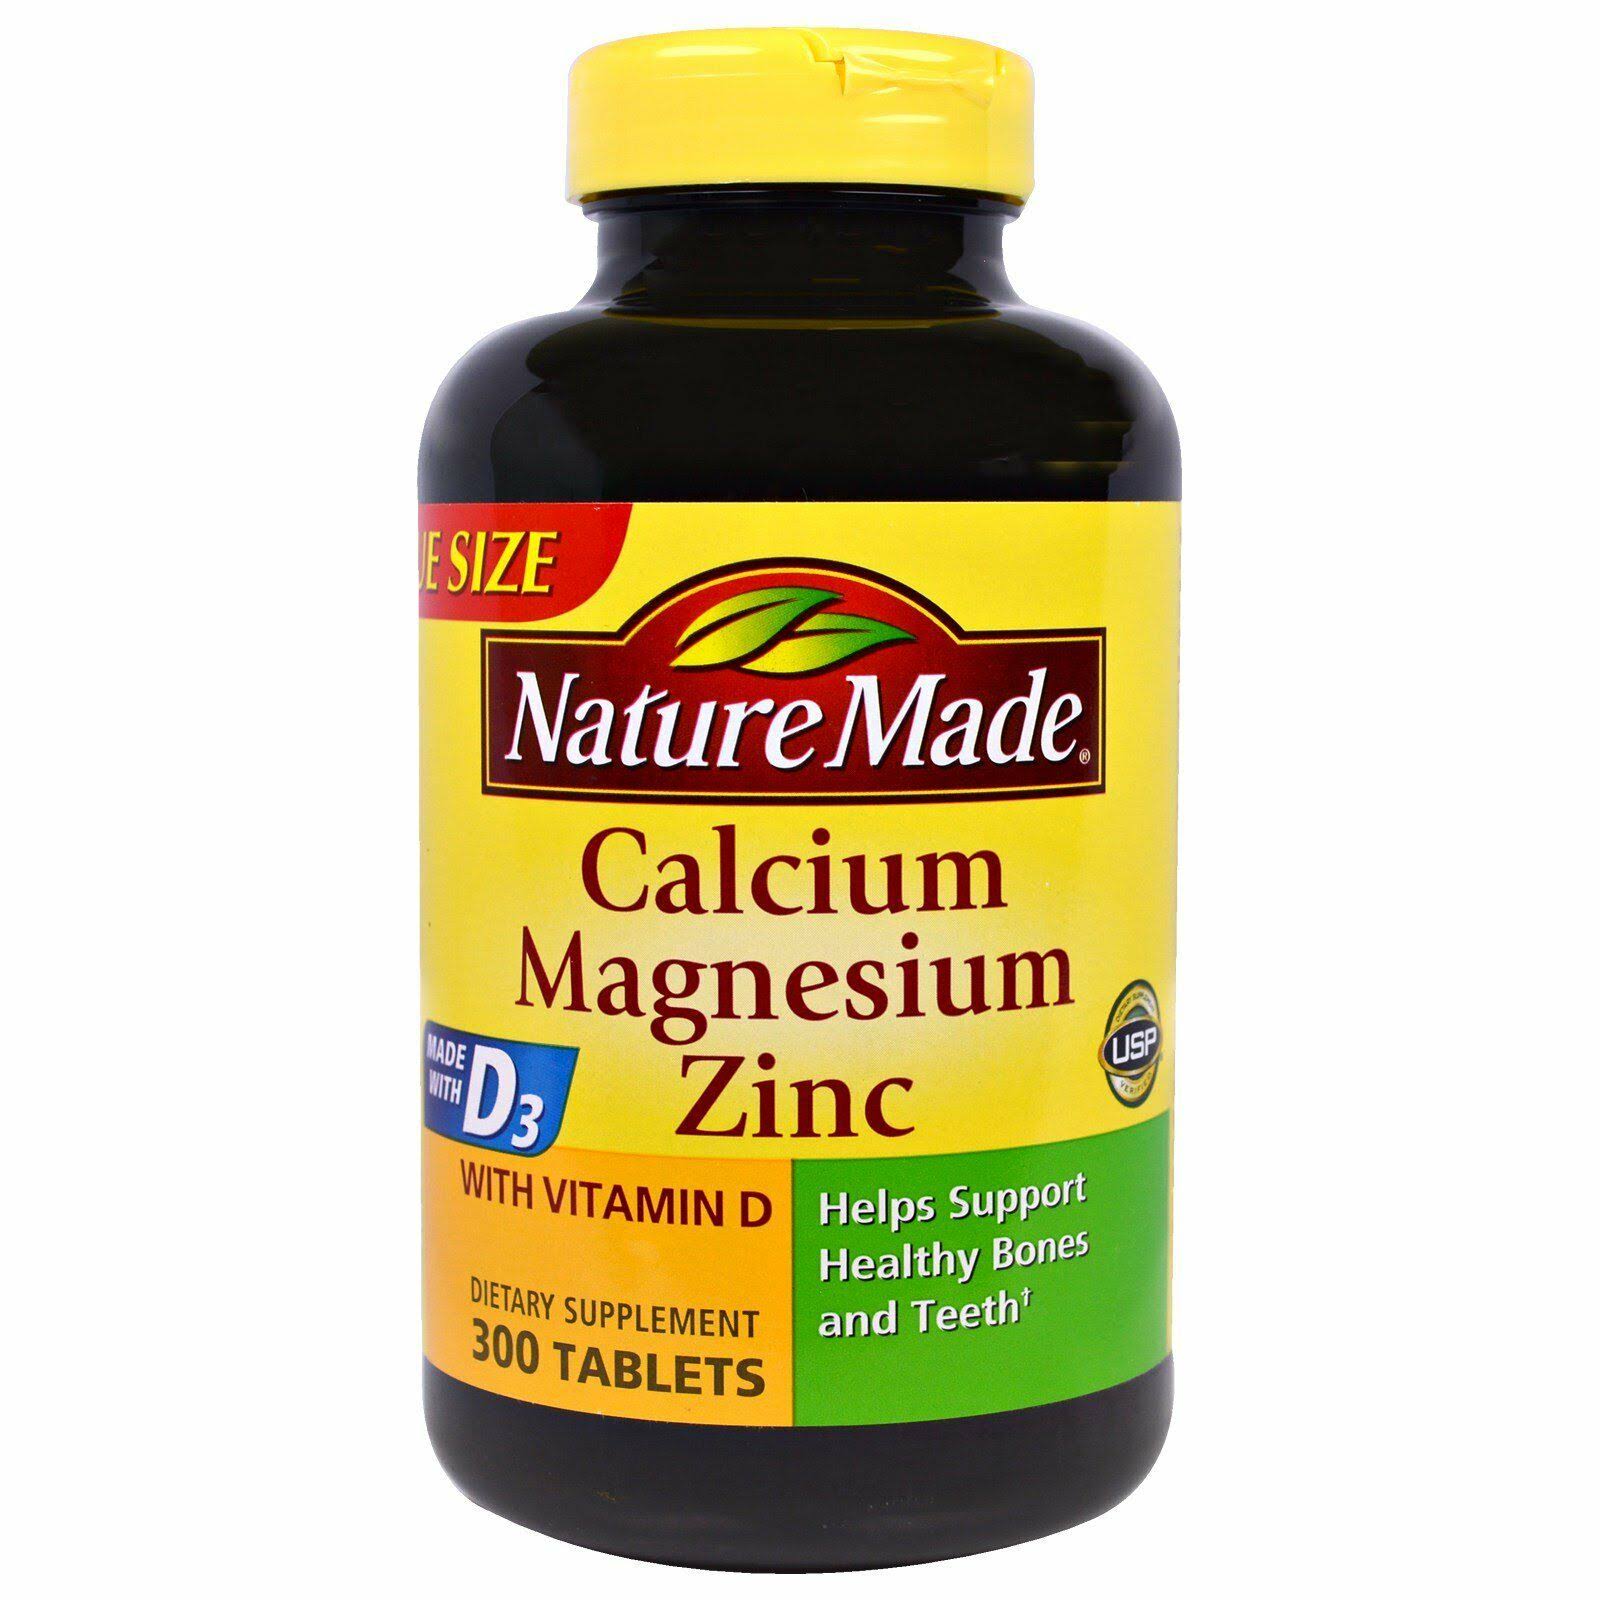 Nature Made Calcium Magnesium Zinc - 300 Capsules